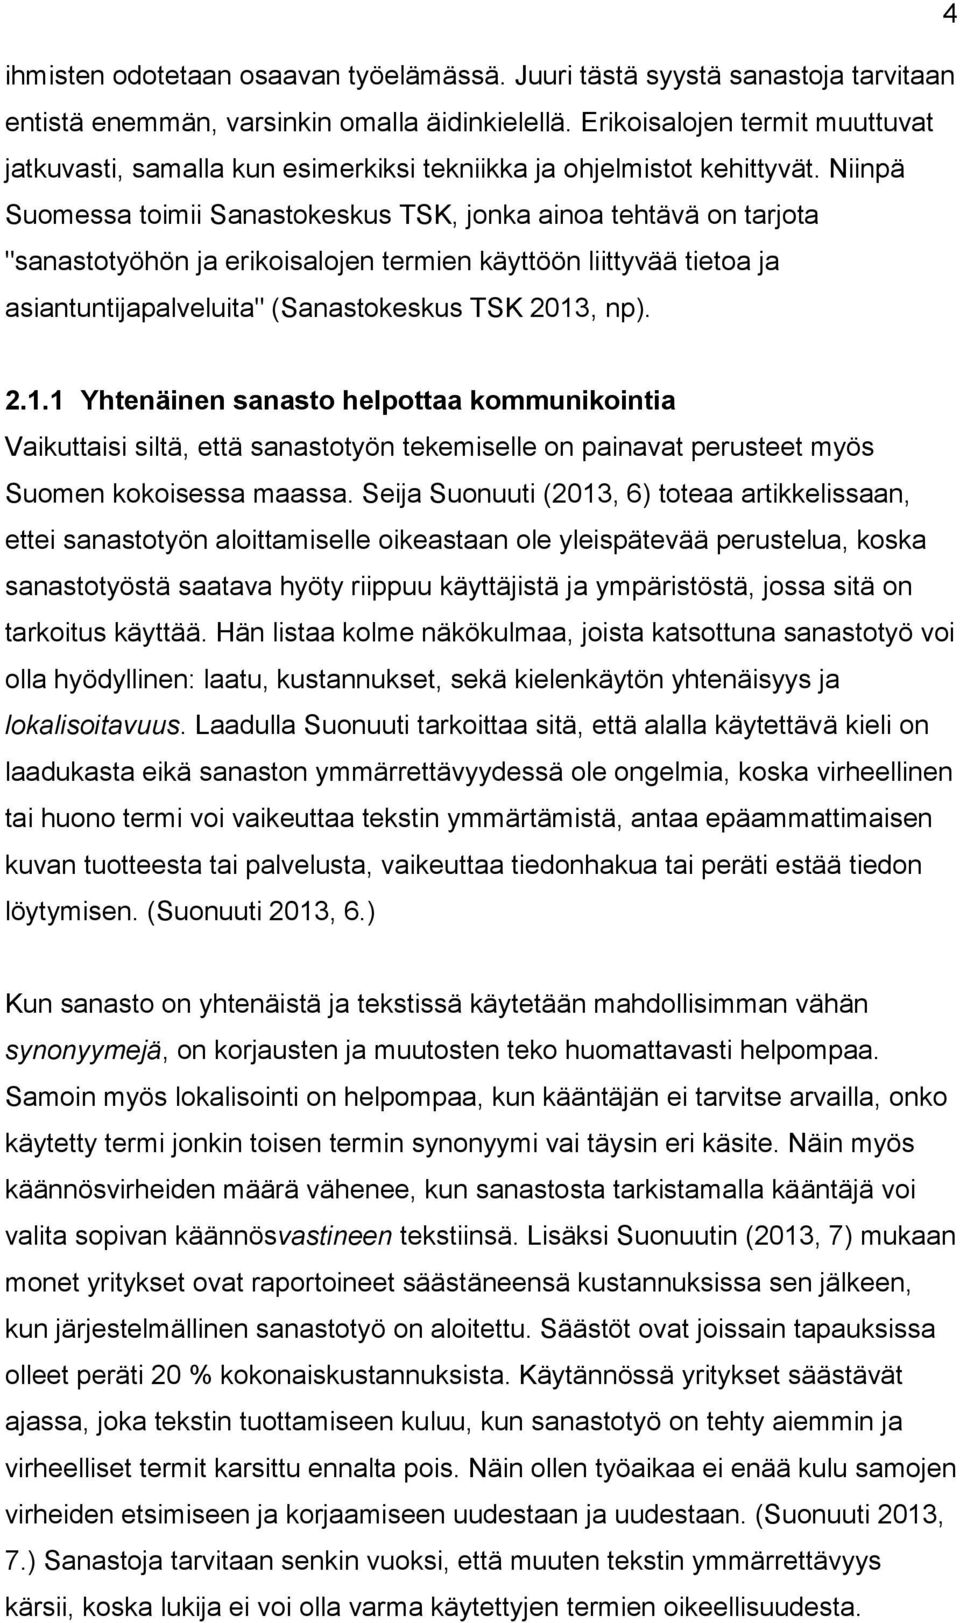 Niinpä Suomessa toimii Sanastokeskus TSK, jonka ainoa tehtävä on tarjota "sanastotyöhön ja erikoisalojen termien käyttöön liittyvää tietoa ja asiantuntijapalveluita" (Sanastokeskus TSK 2013